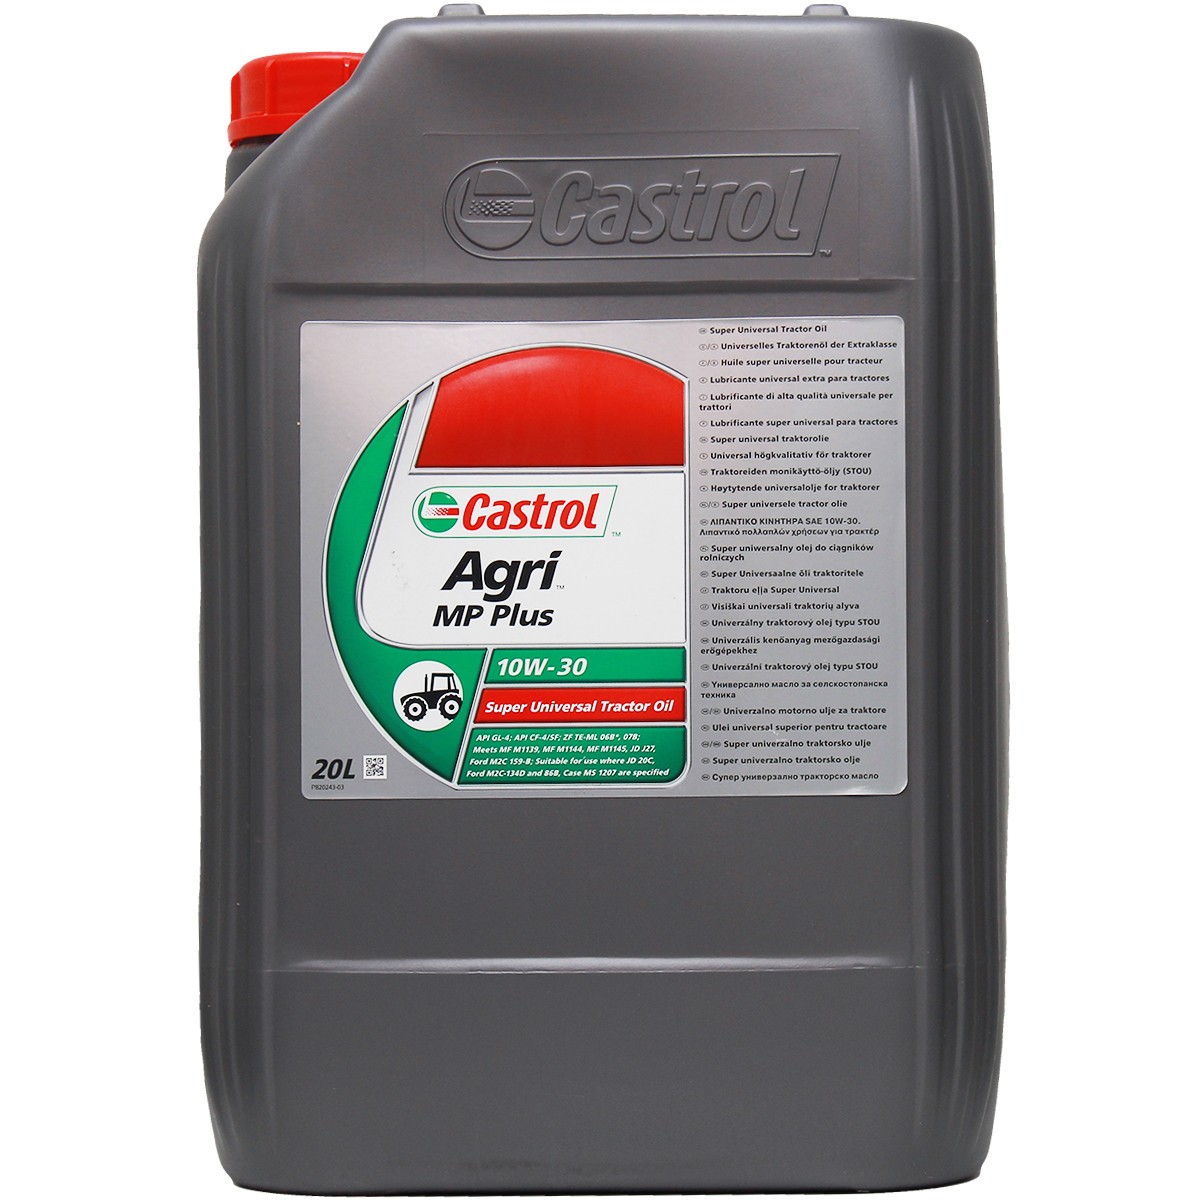 Car oil API GL 4 CASTROL - 14A96D Agri, MP Plus